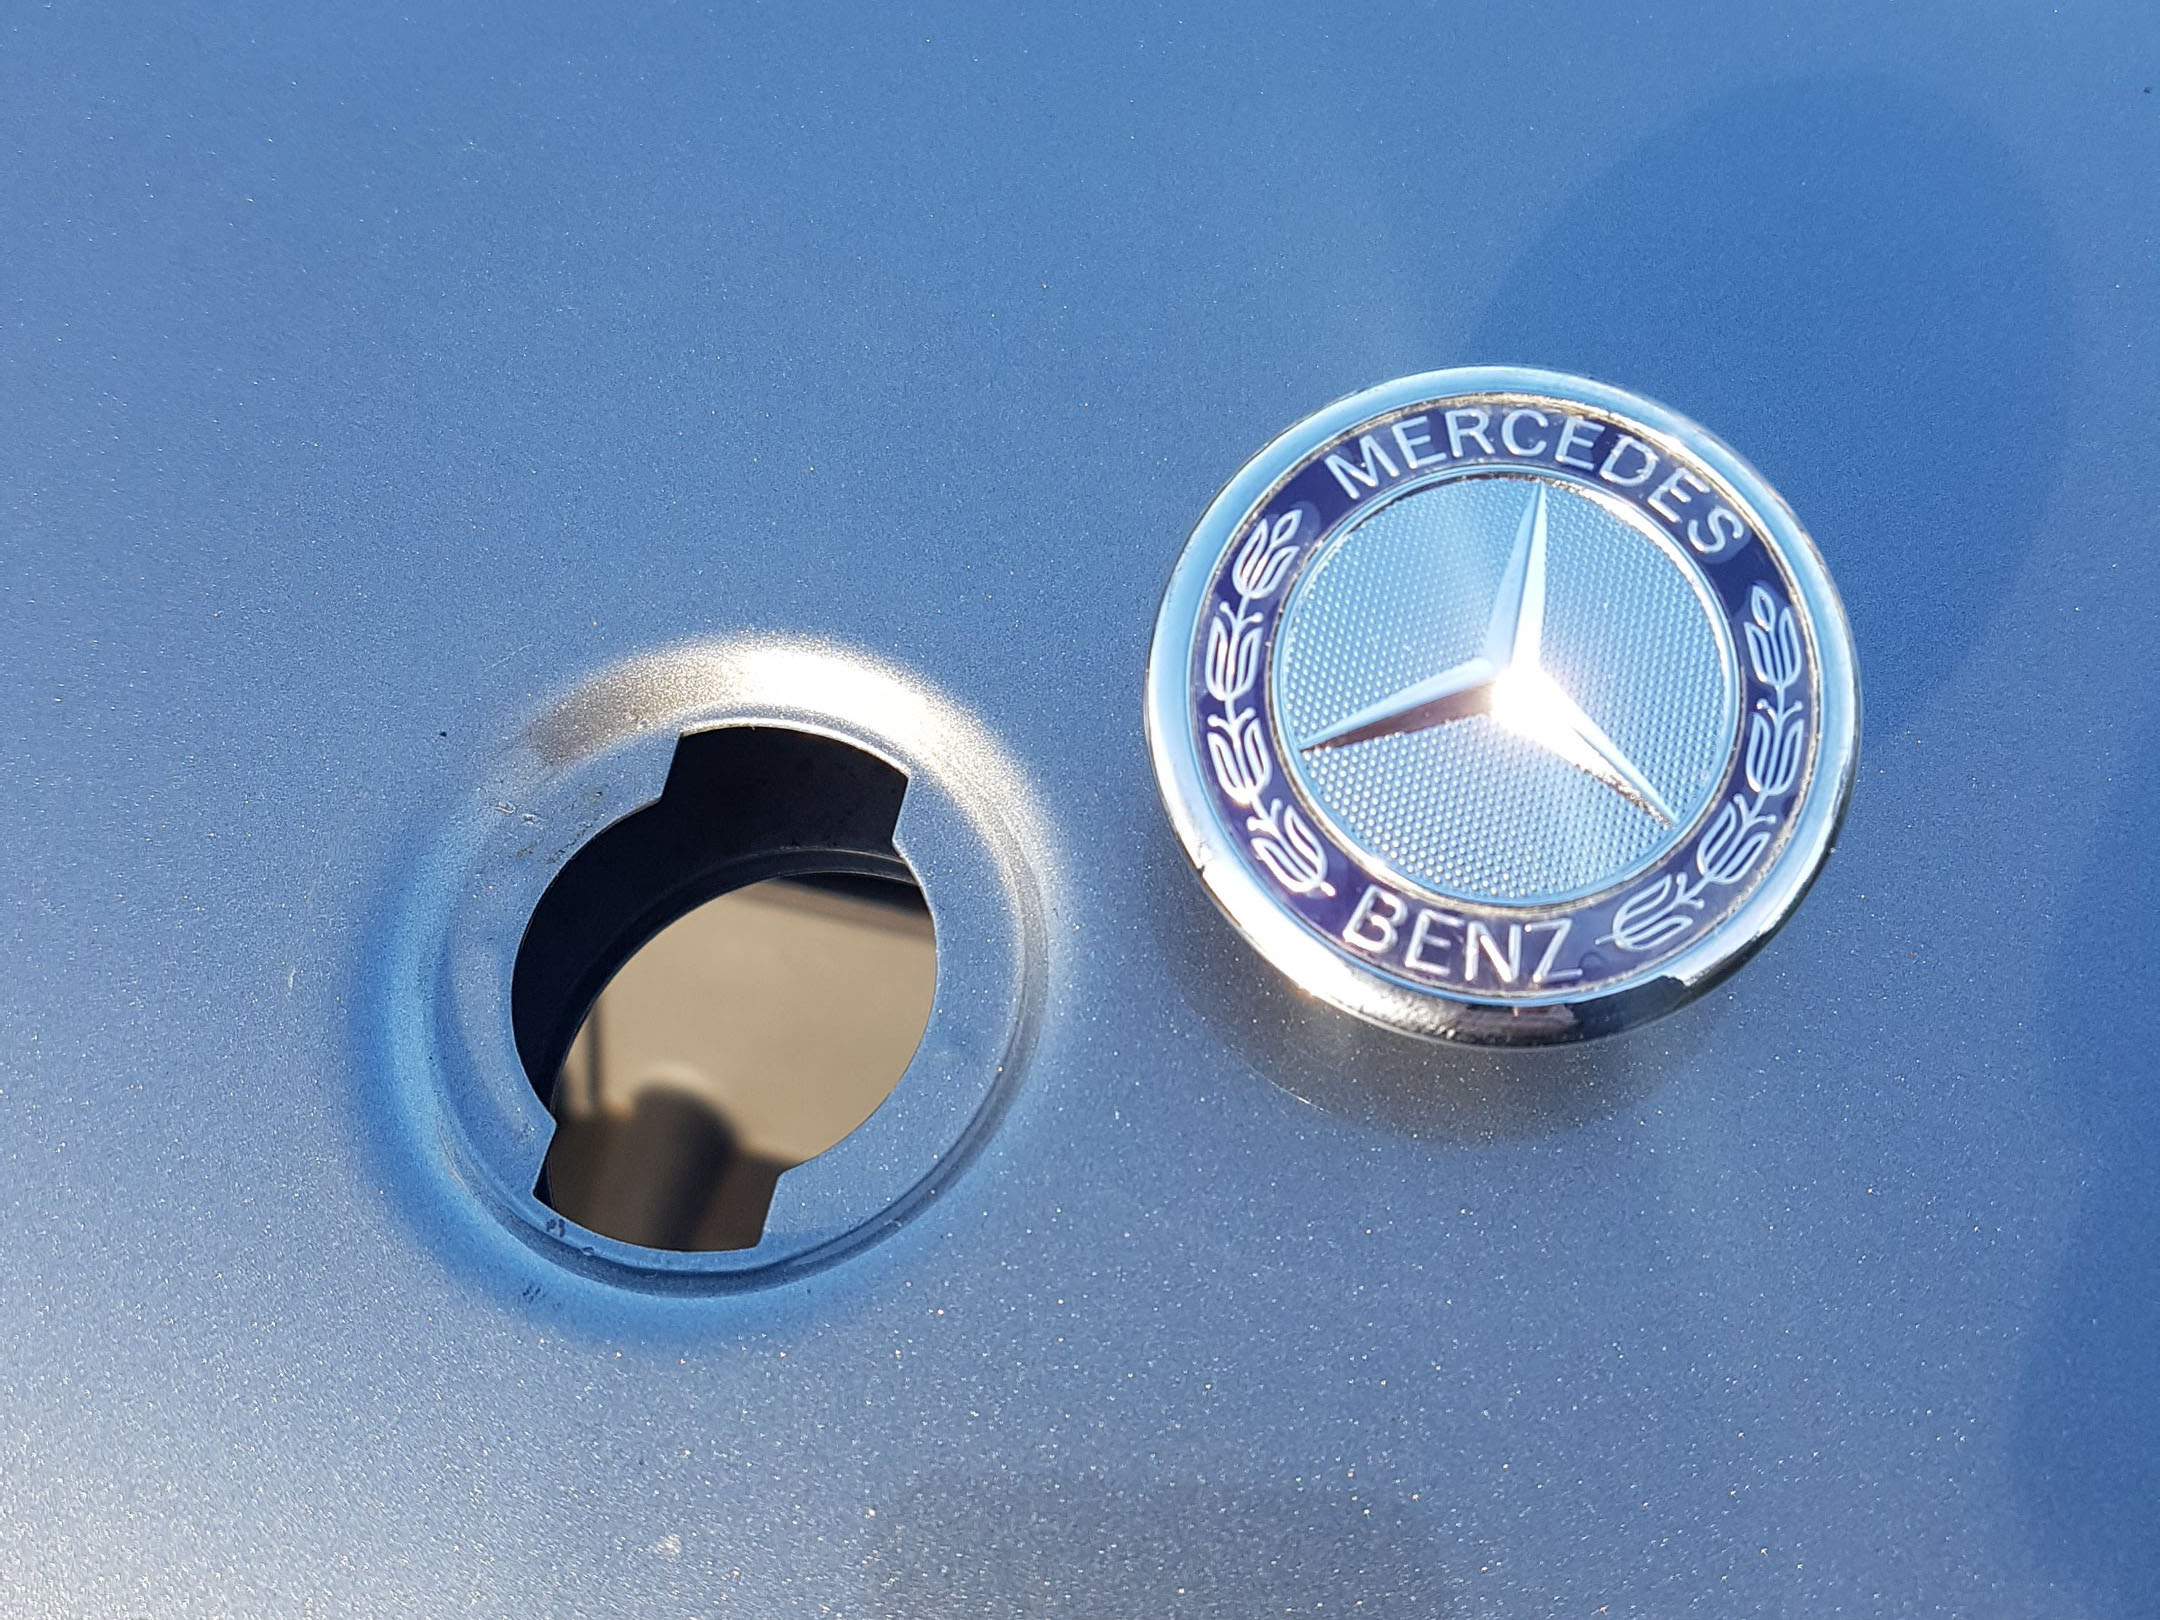 FIT Mercedes Benz Star Flat Hood Bonnet Logo Emblem Badge High Gloss 57mm